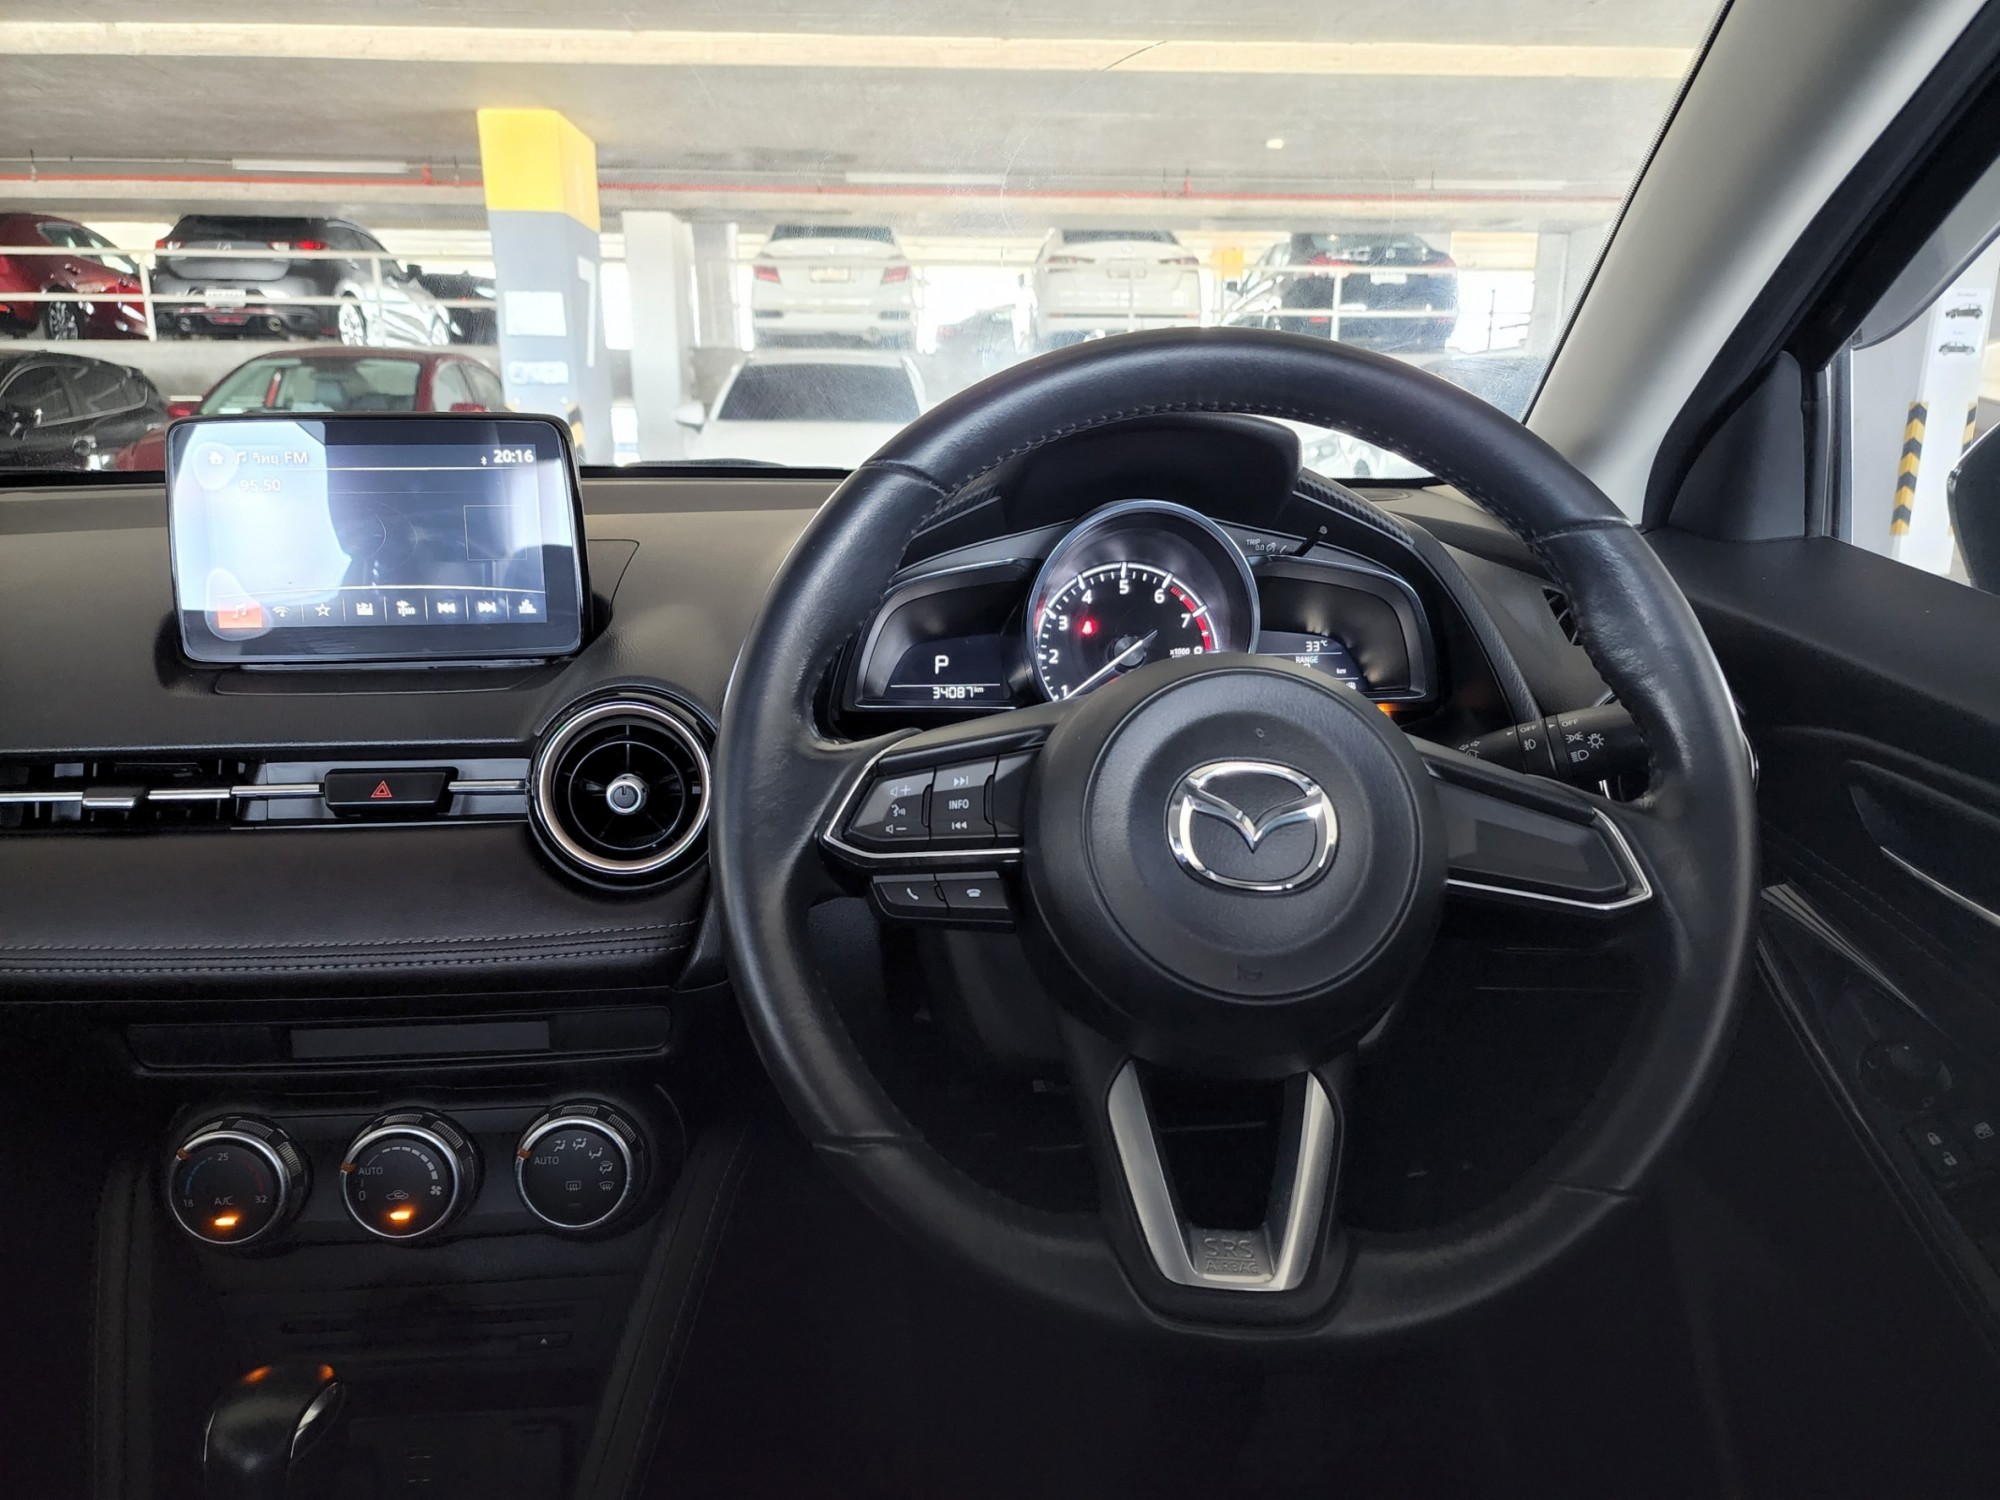 2017 Mazda 2 Sedan (4 à¸›à¸£à¸°à¸•à¸¹) à¸ªà¸µà¸”à¸³